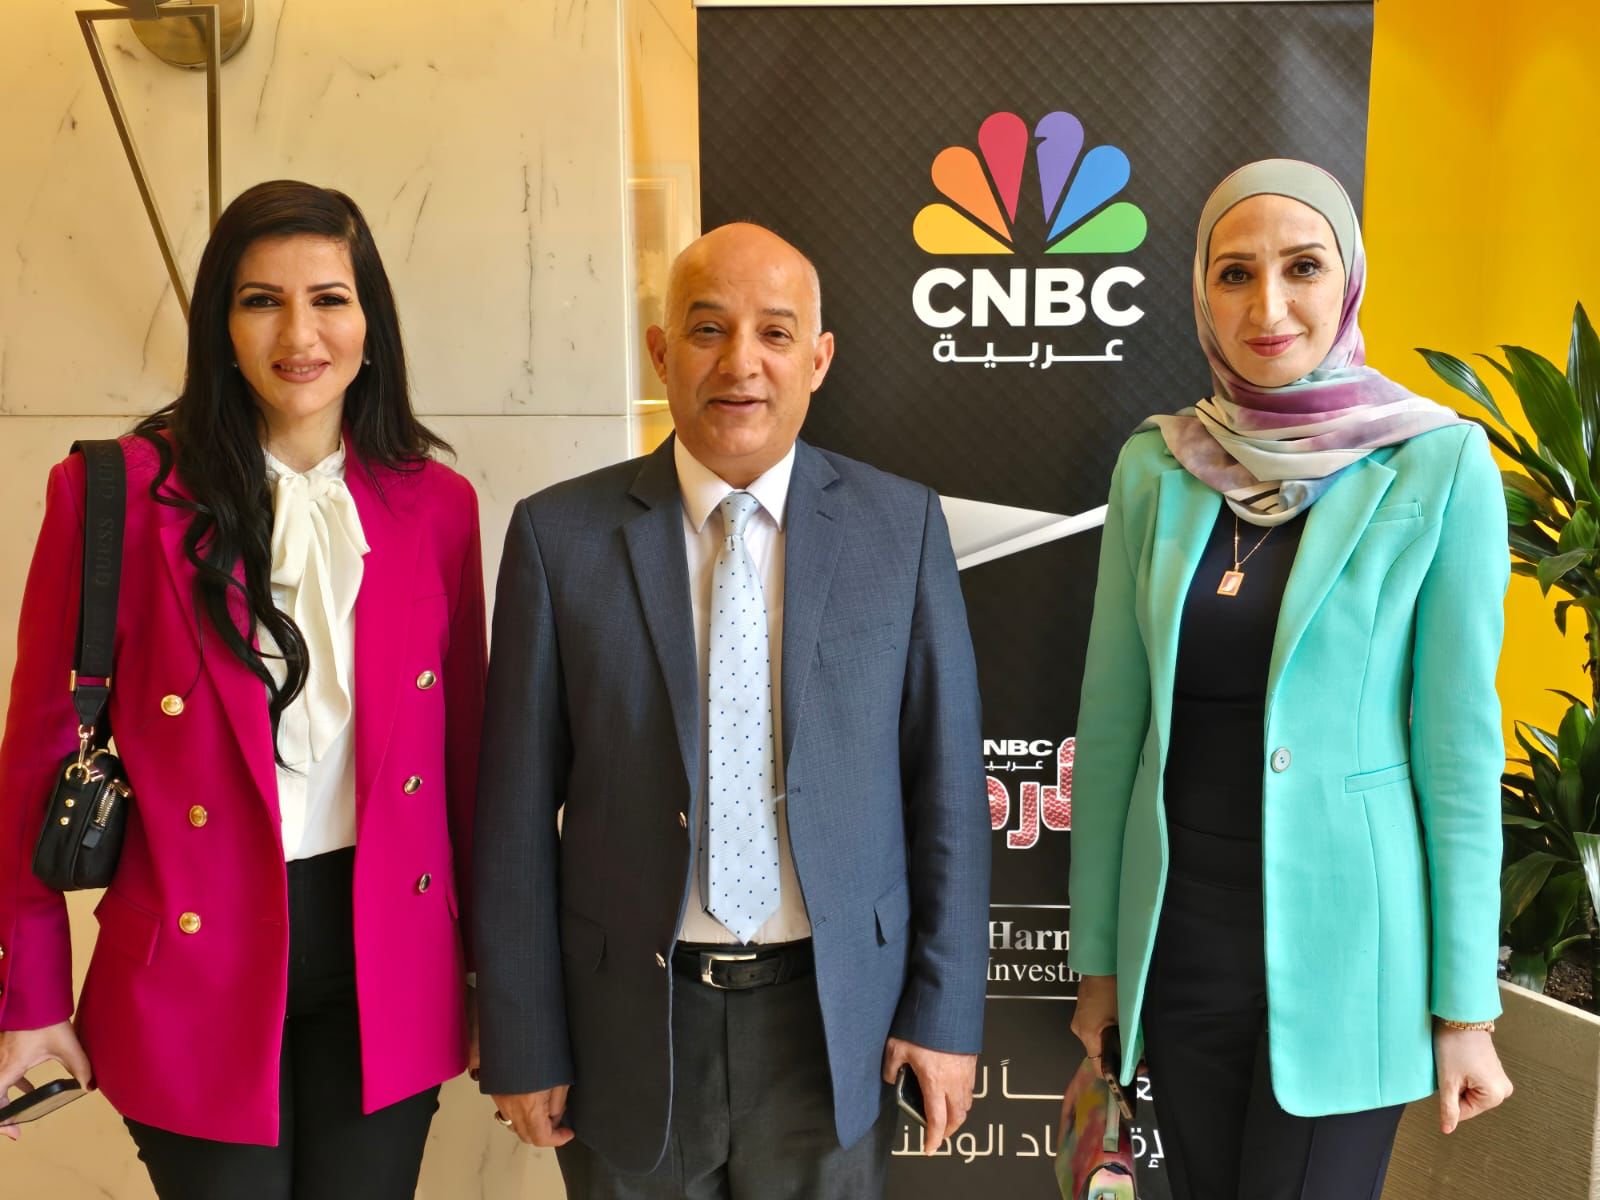 المبيضين يرعى إطلاق برنامج لقناة cnbc في الأردن  